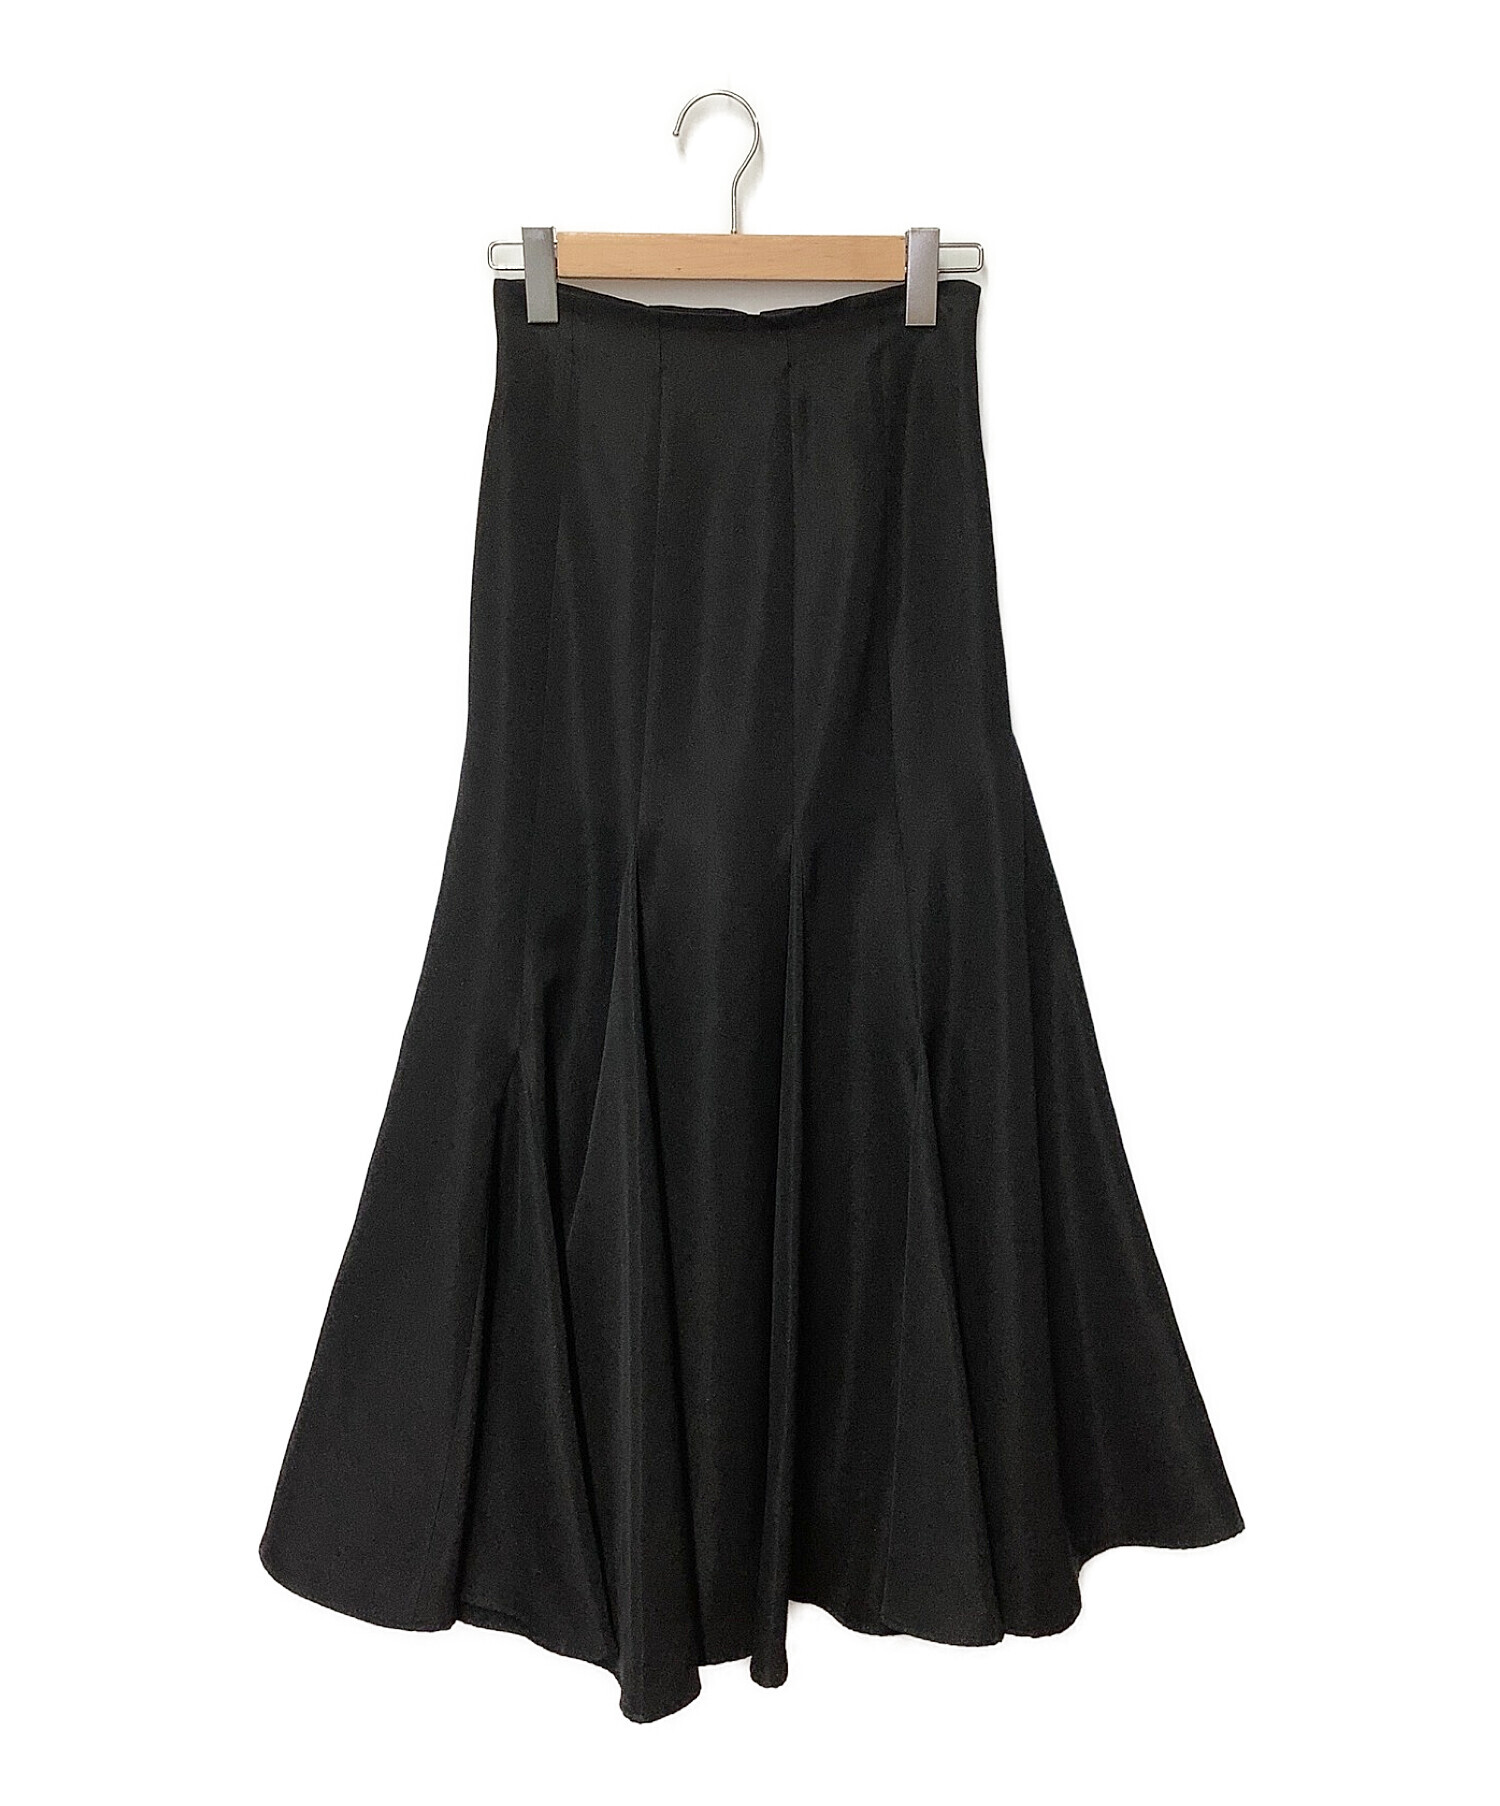 Snidel (スナイデル) ランダムボリュームスカート ブラック サイズ:1